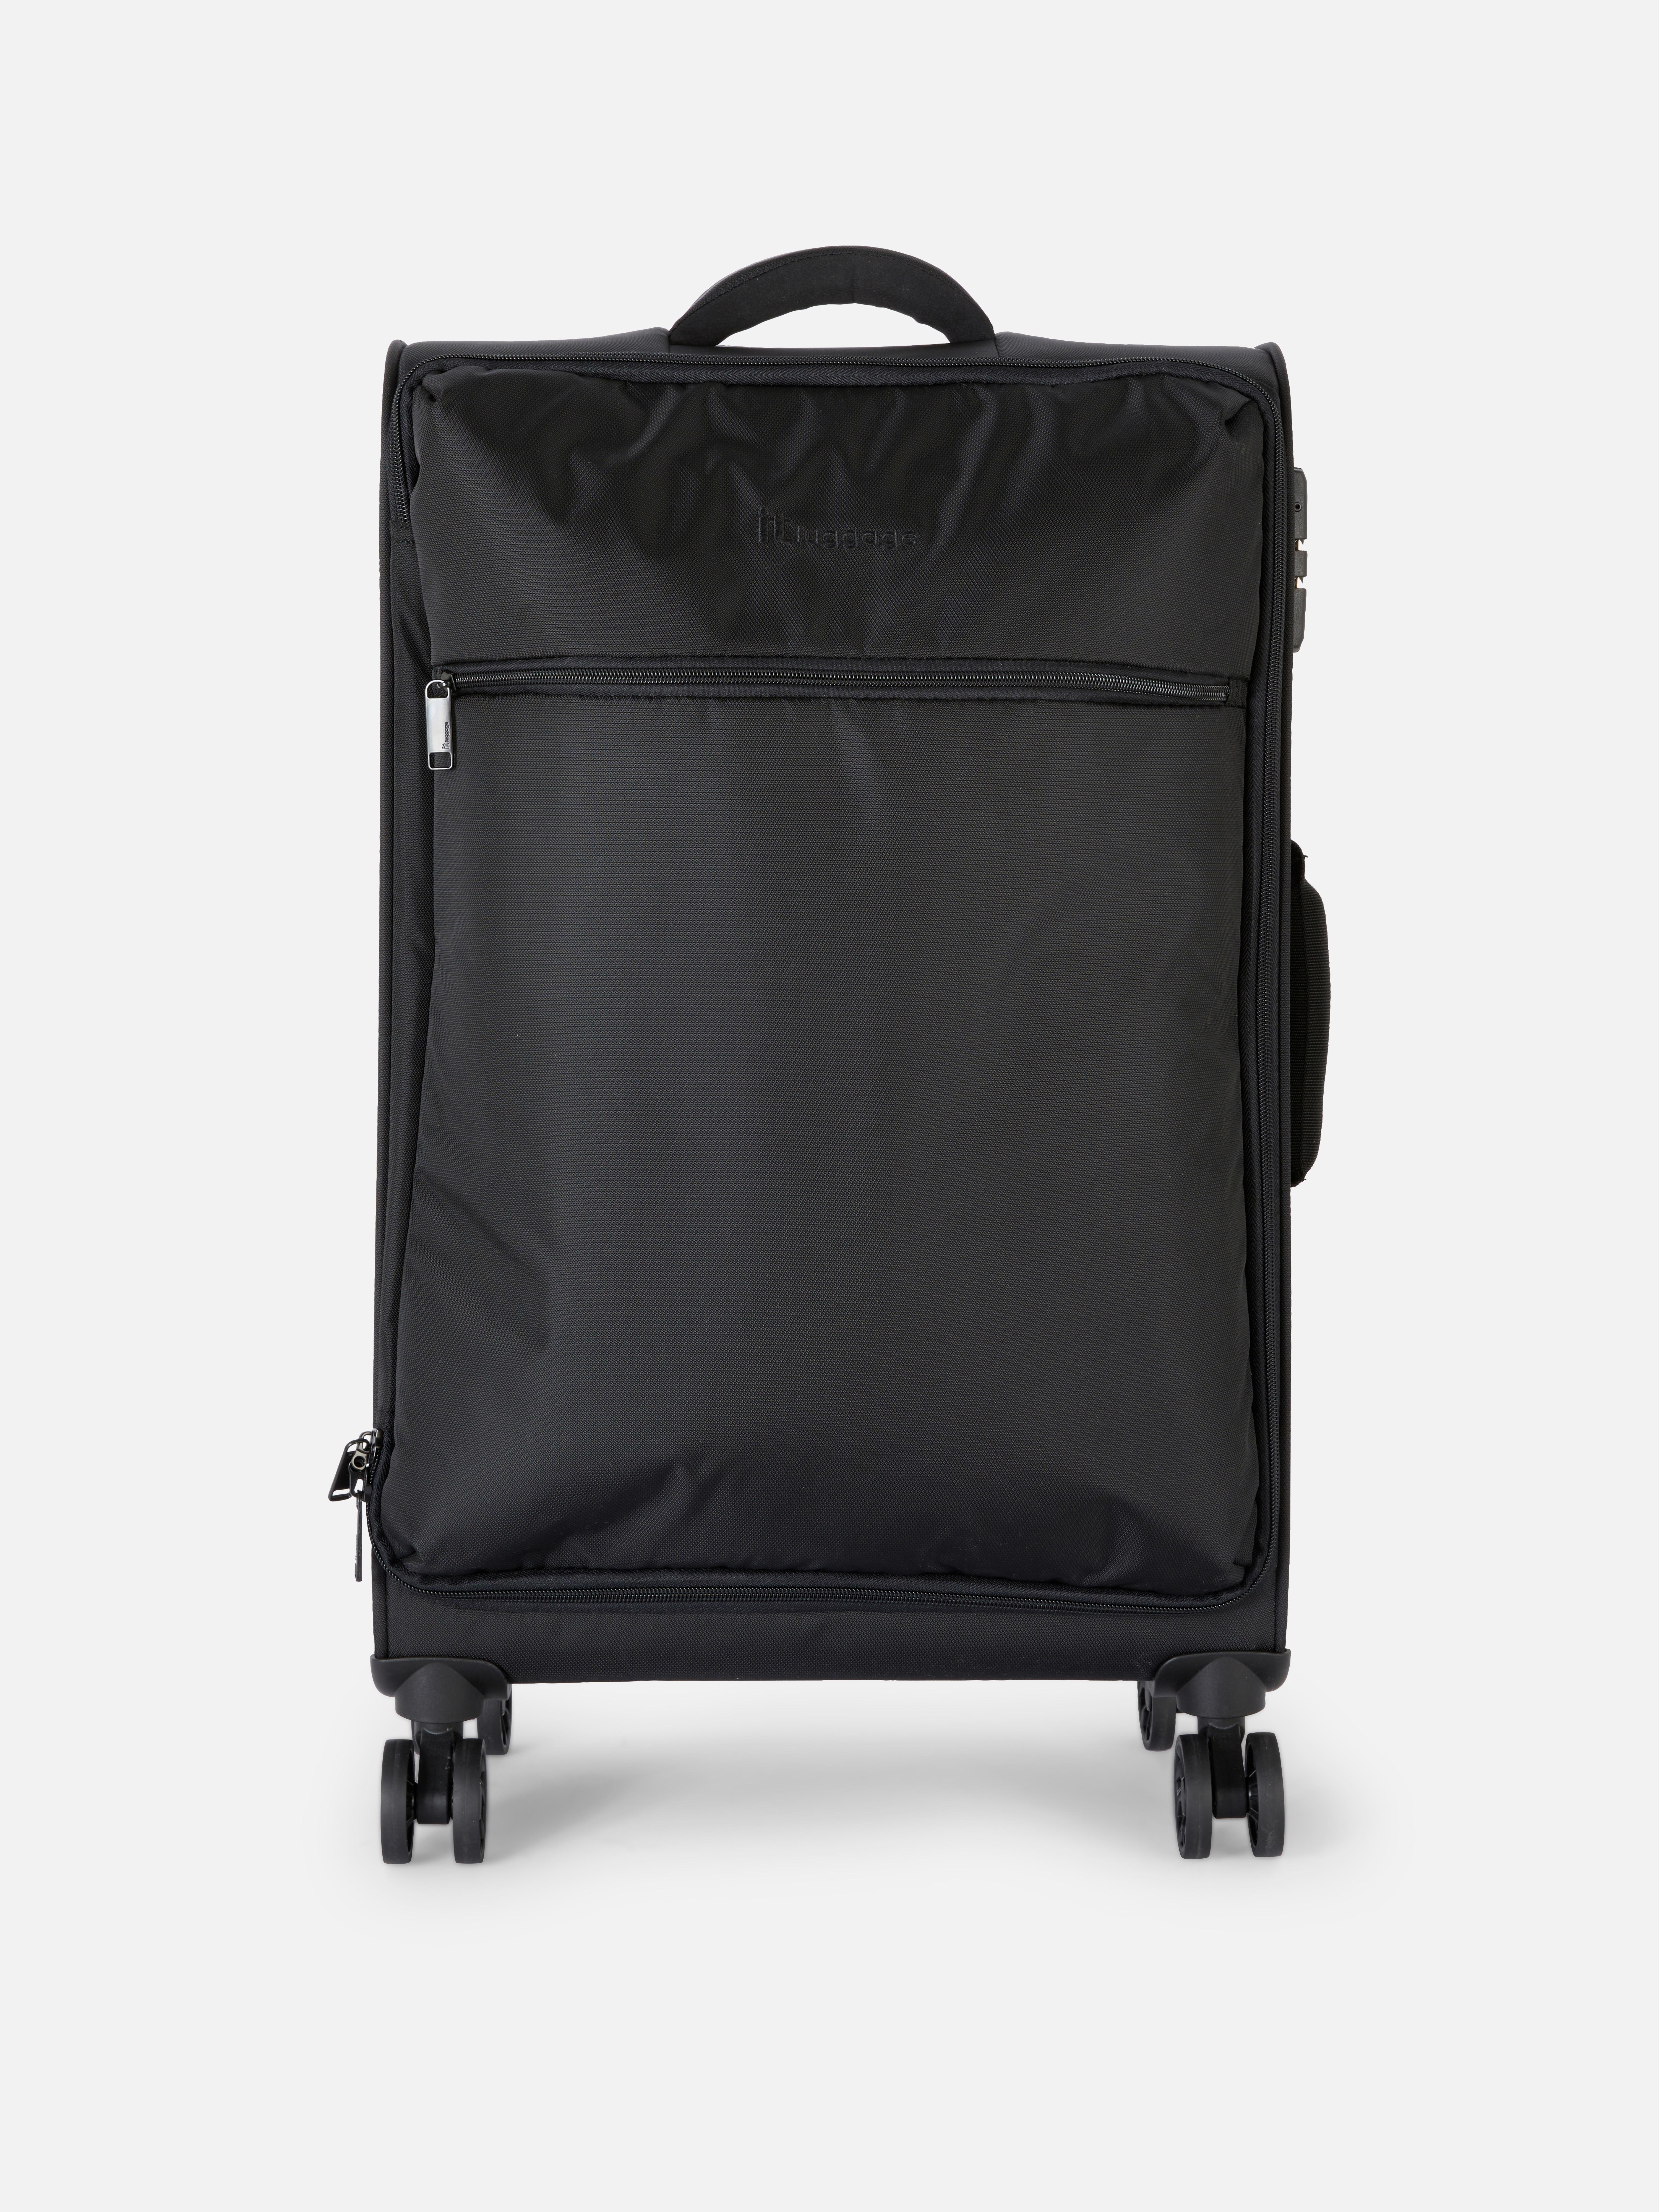 it Luggage Soft Shell Suitcase Black